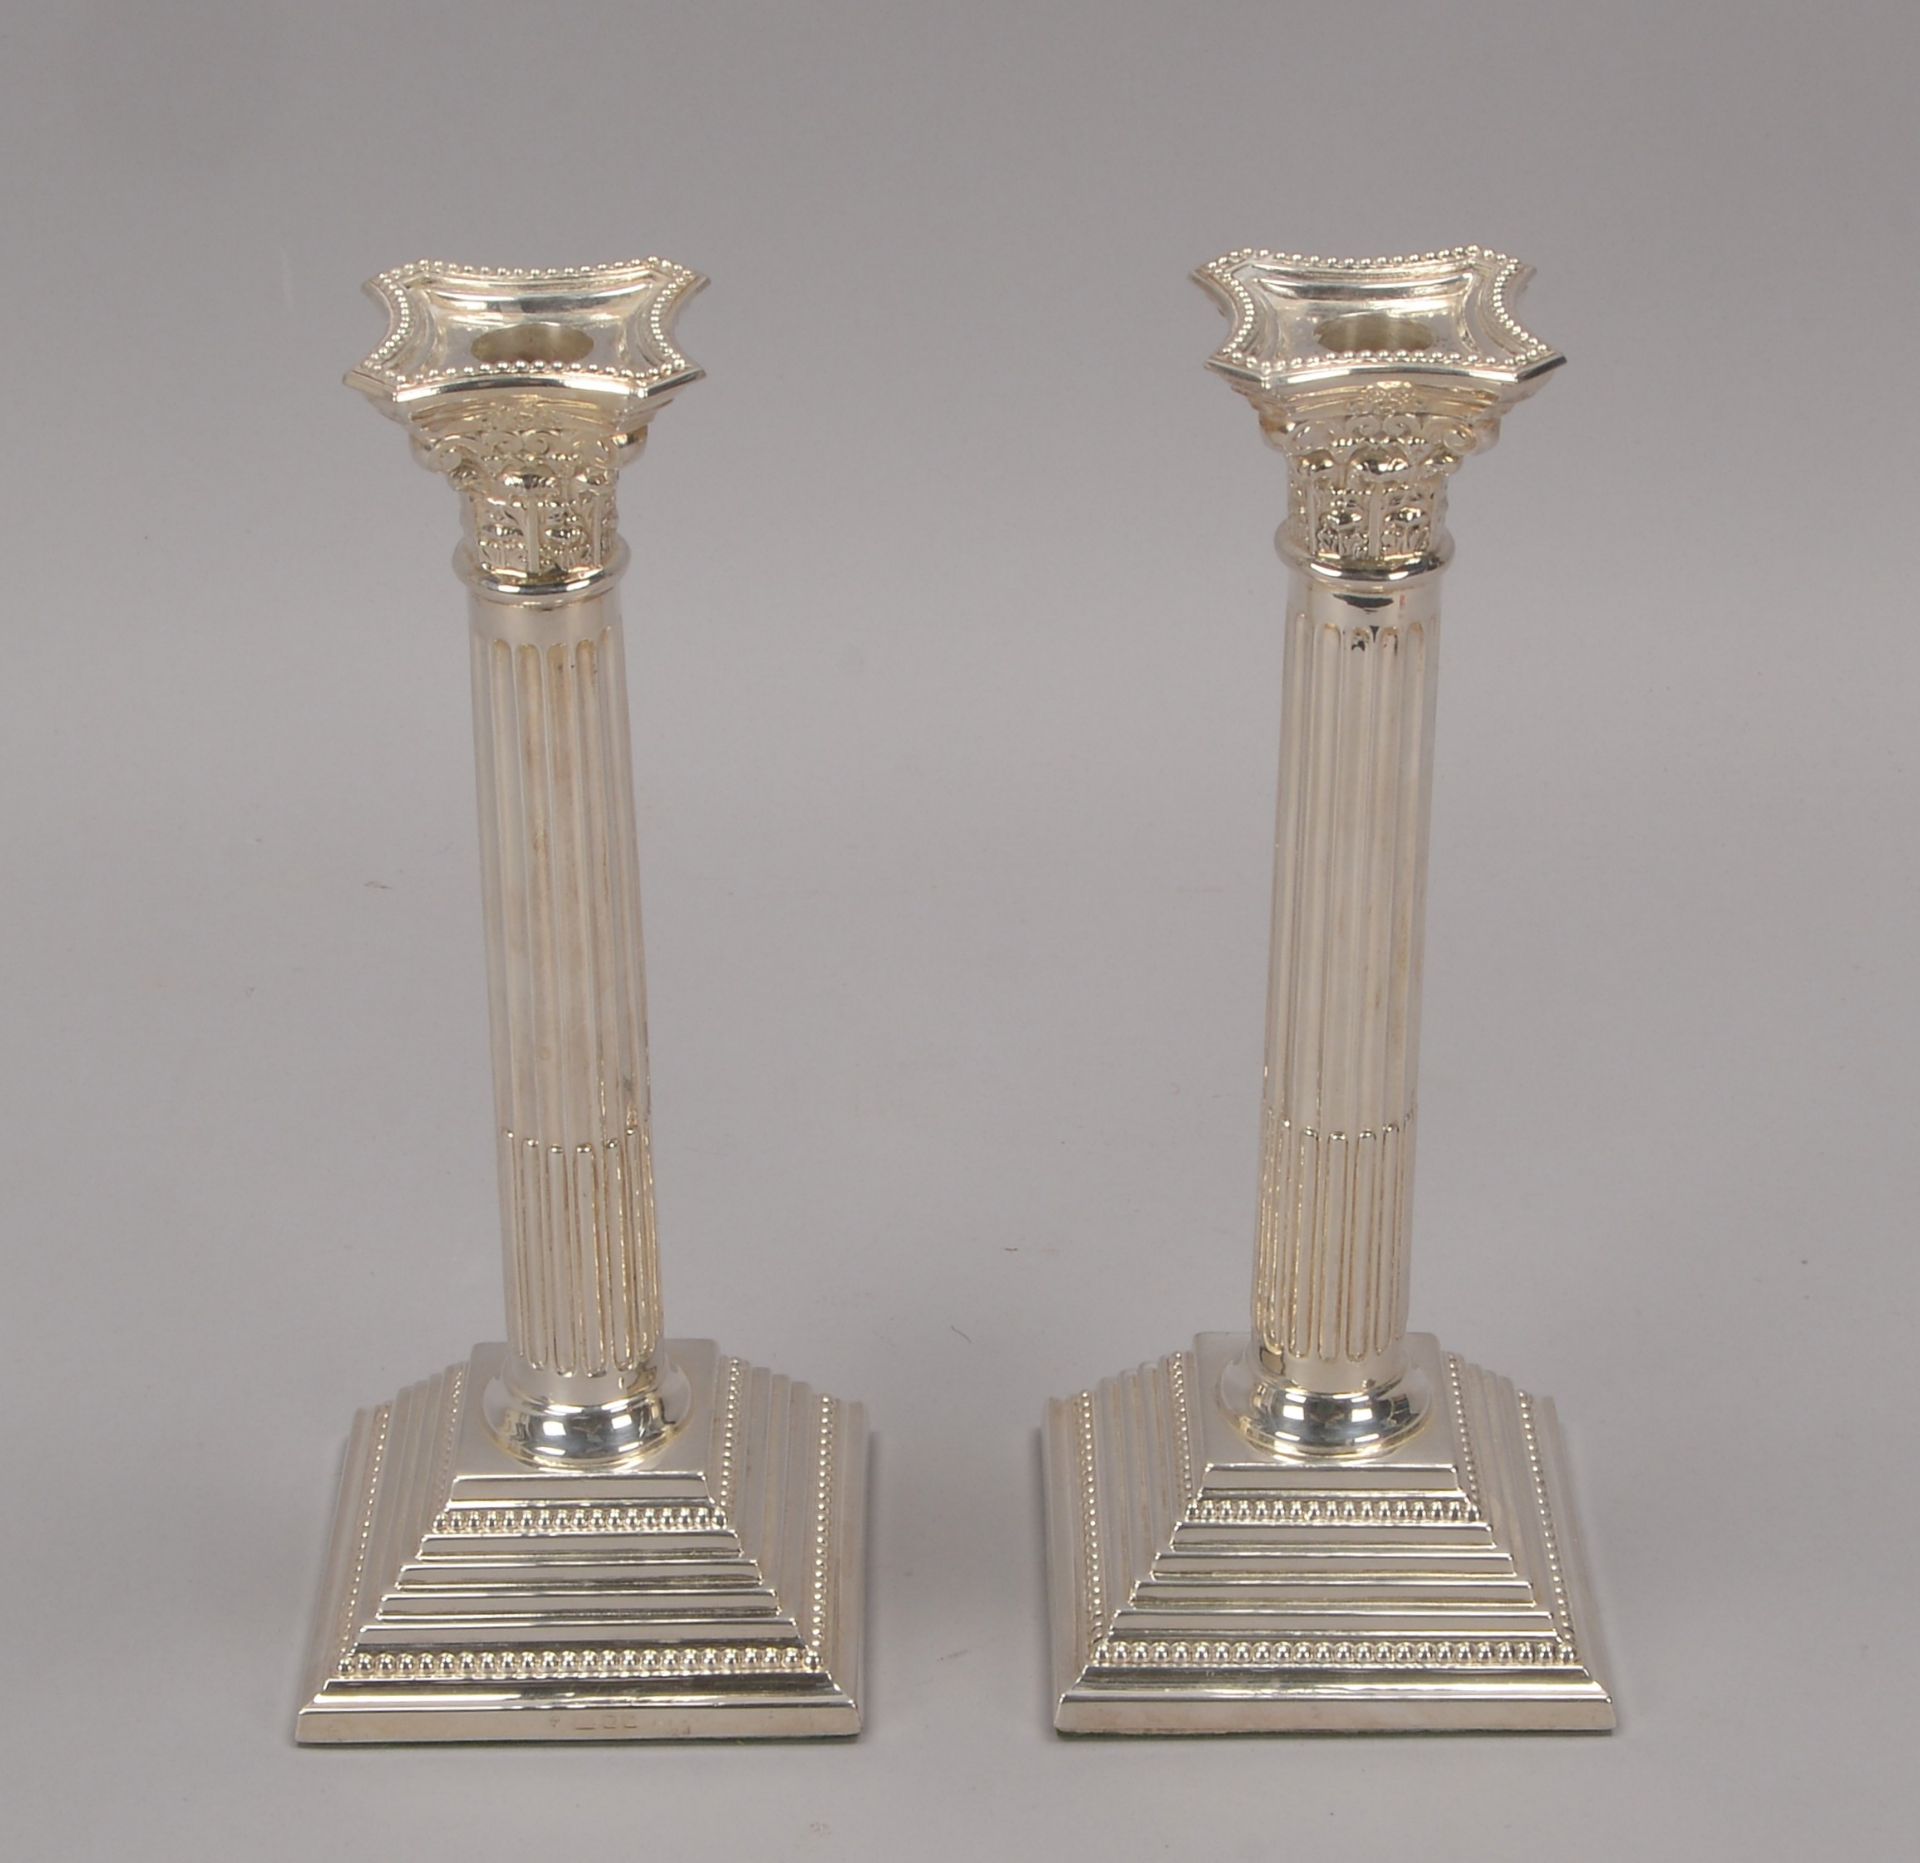 Paar Kerzenleuchter (London), Sterlingsilber - gefuellt, in Form korinthischer Saeulen, Hoehe 25 cm - Image 2 of 2